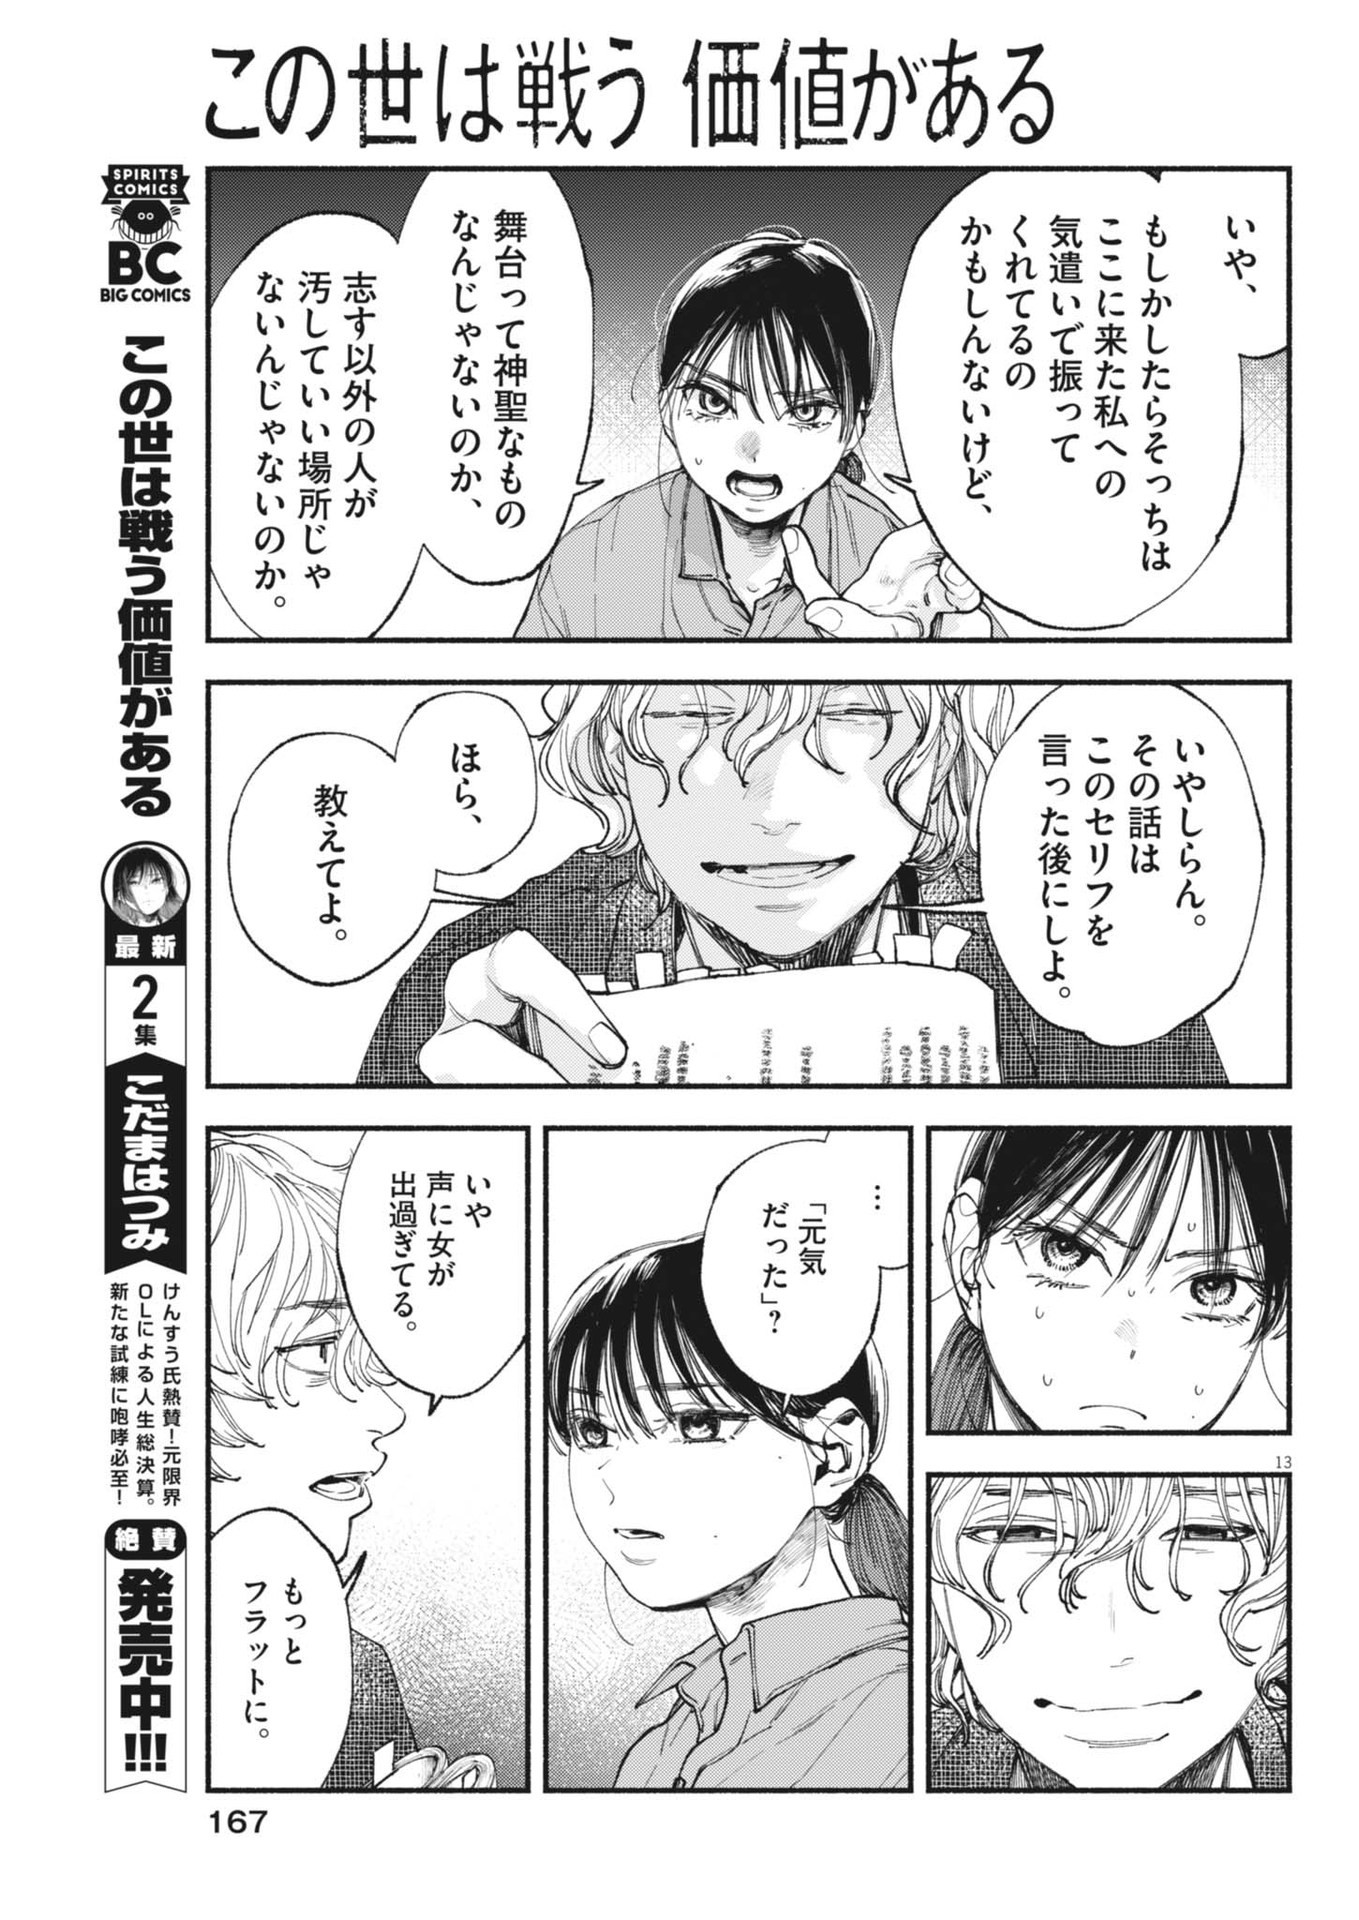 Konoyo wa Tatakau Kachi ga Aru  - Chapter 28 - Page 13